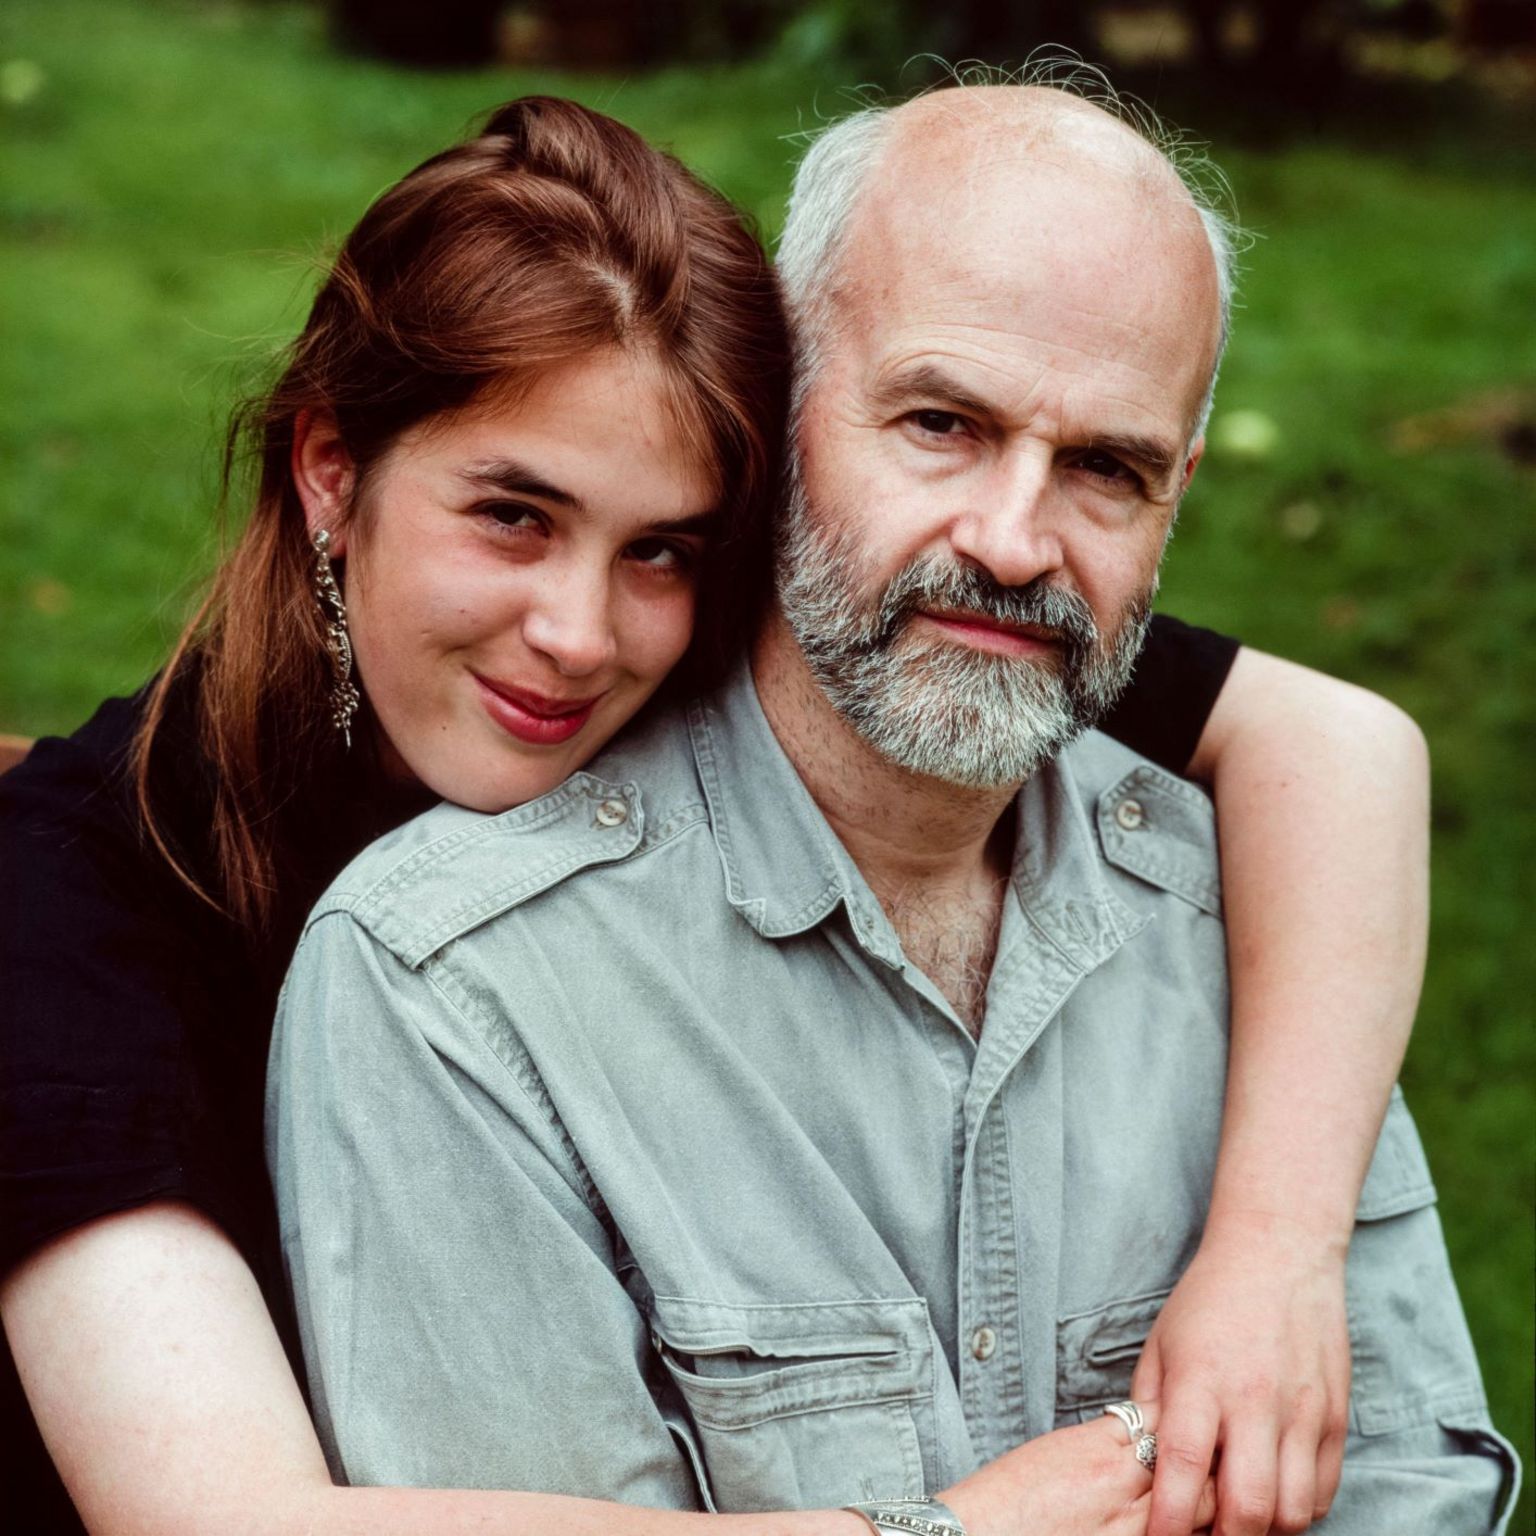 Terry Pratchett with daughter Rhianna Pratchett at home in 1992